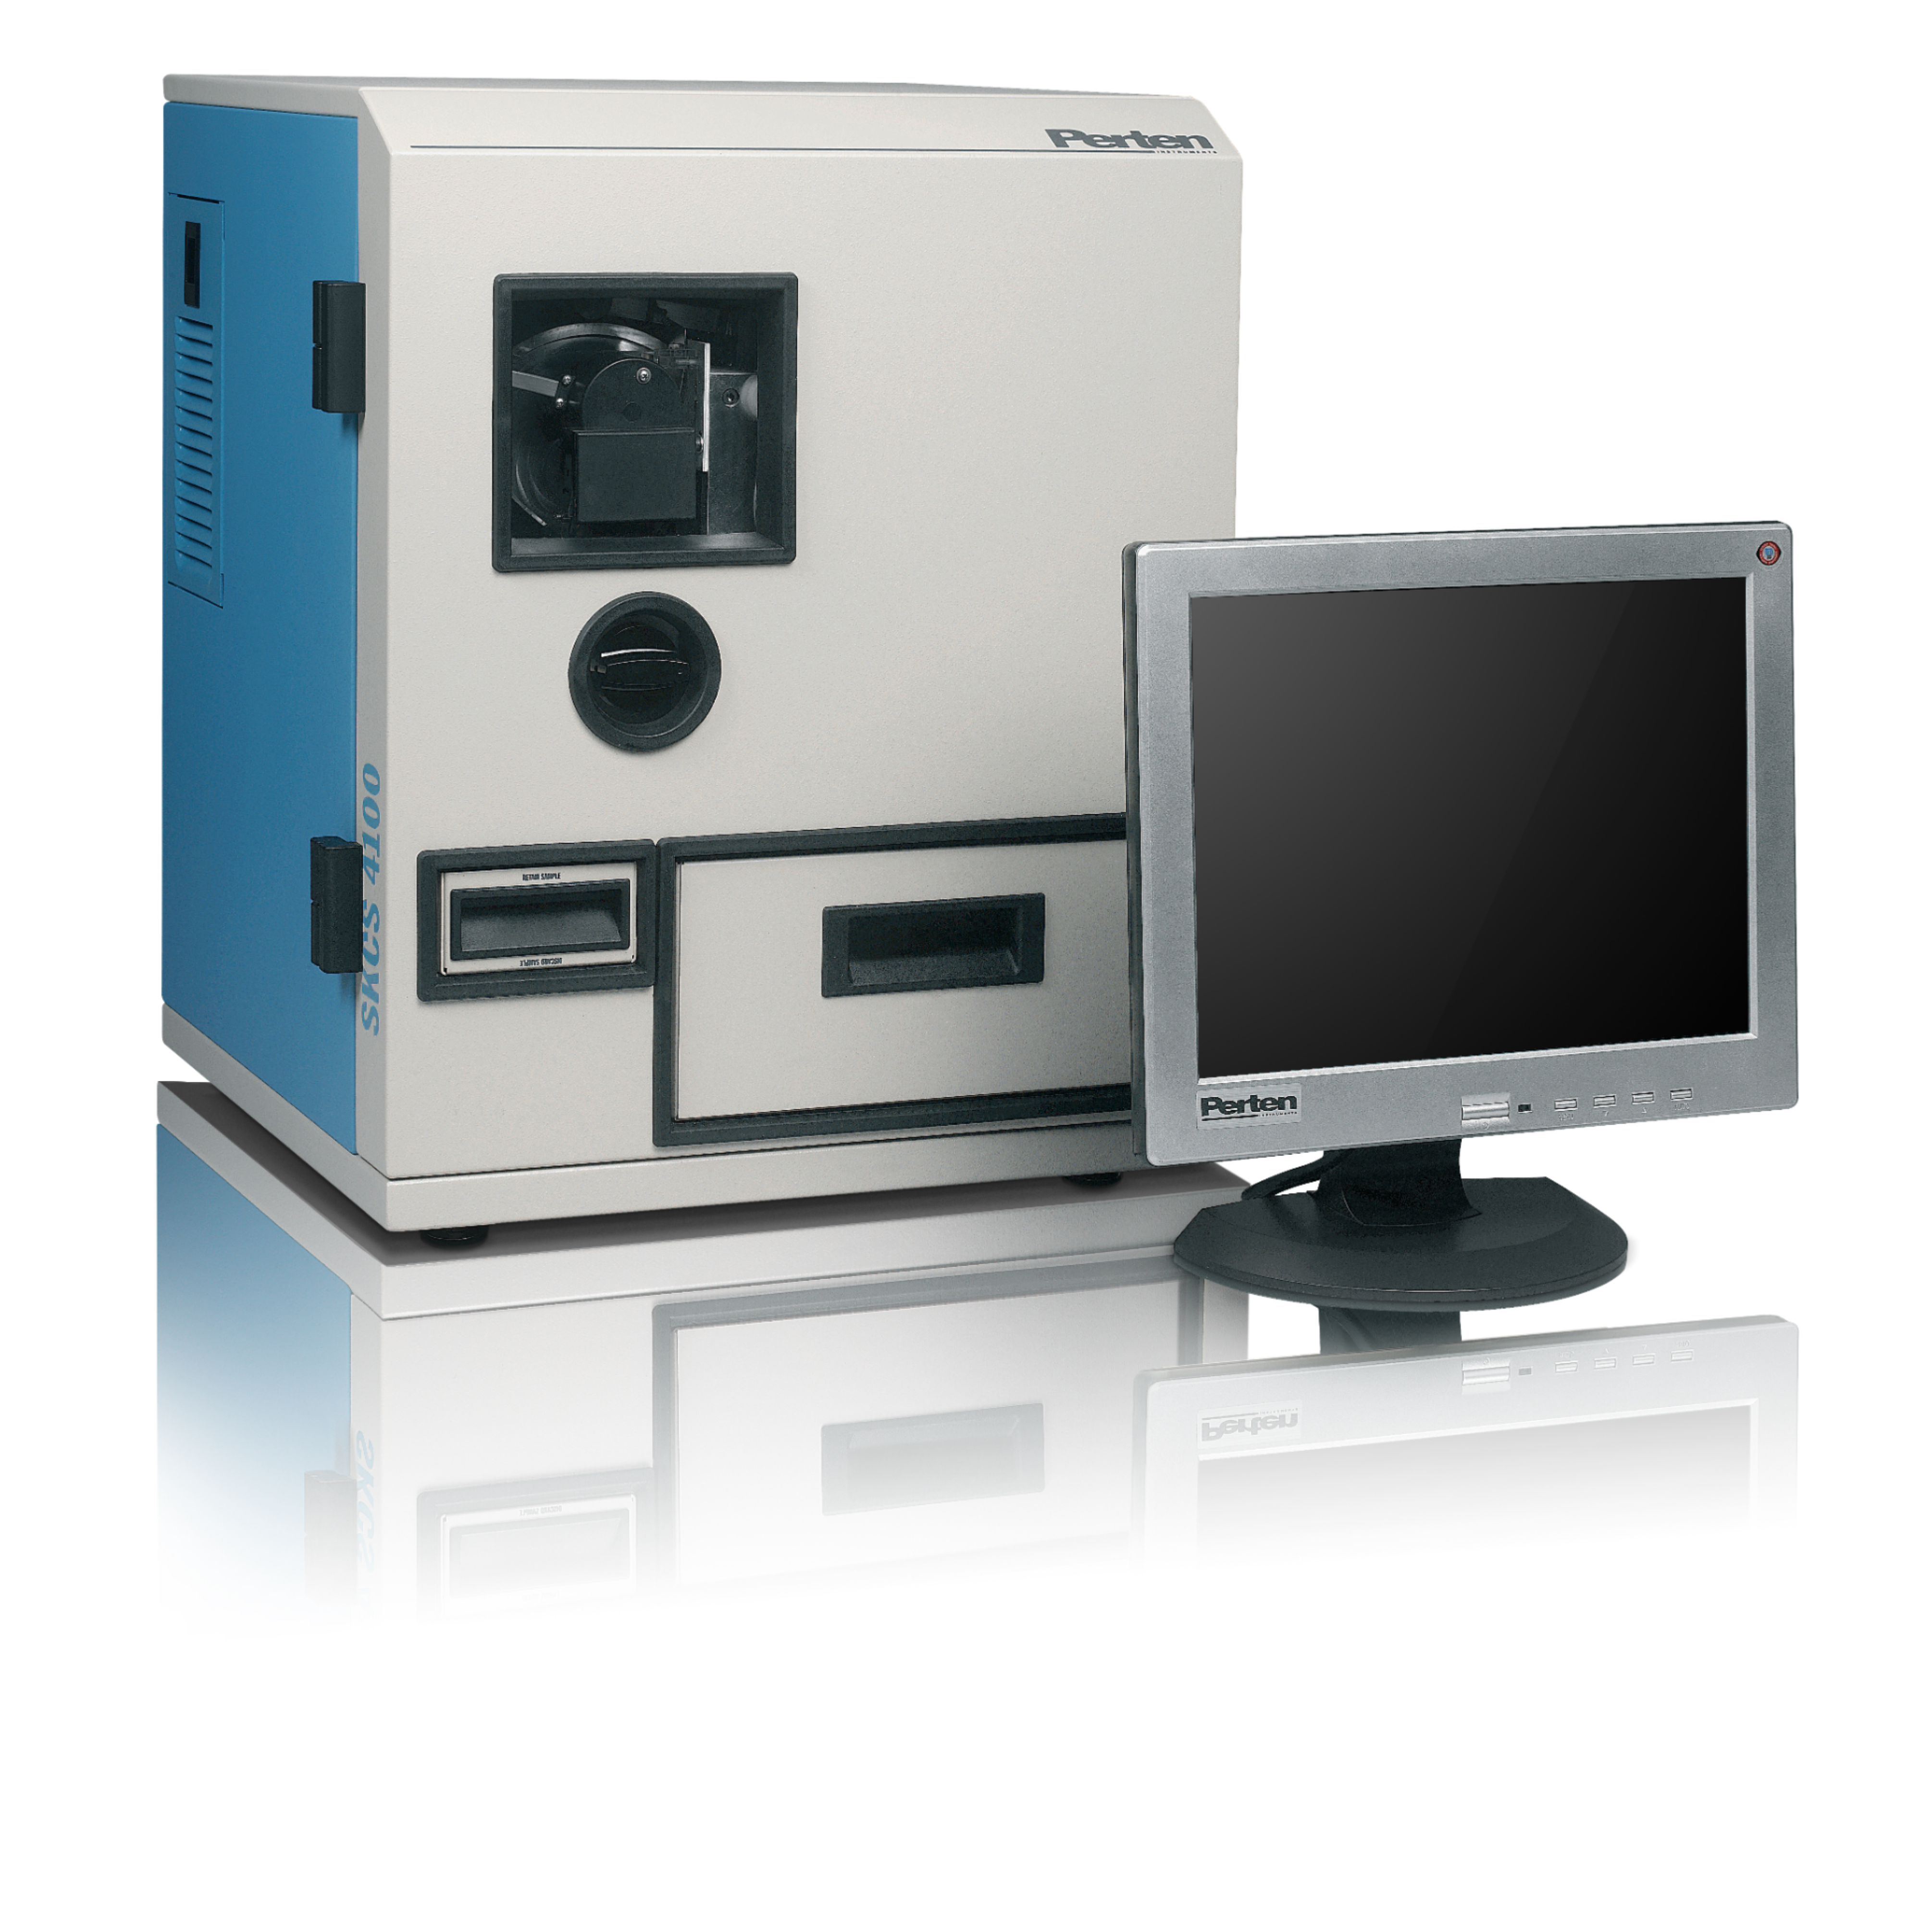 SKCS4100单粒谷物质量分析仪